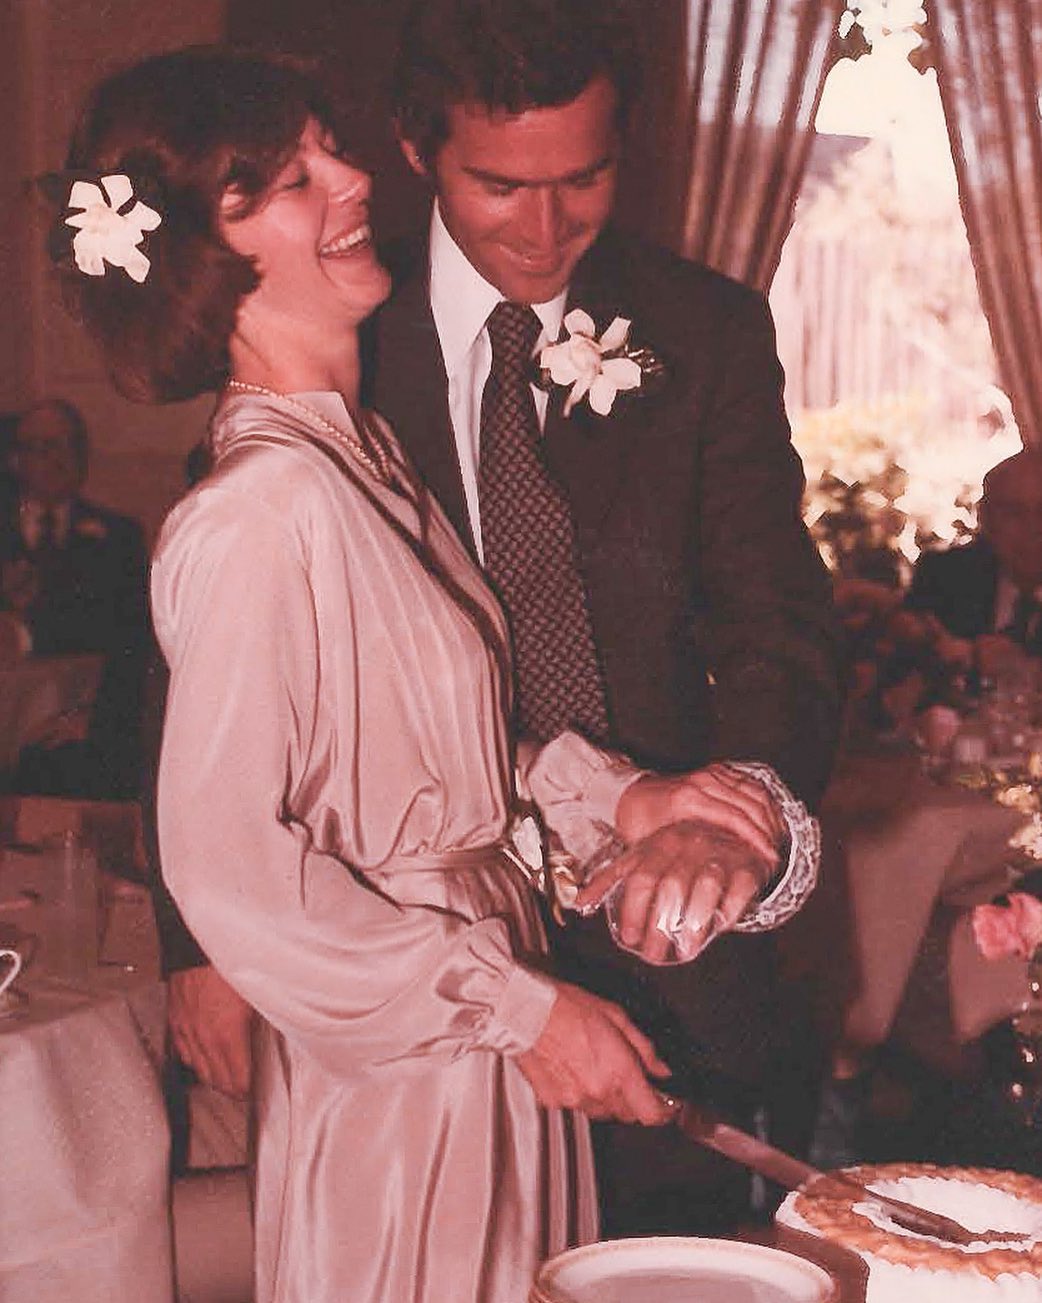 جورج بوش وزوجته لورا